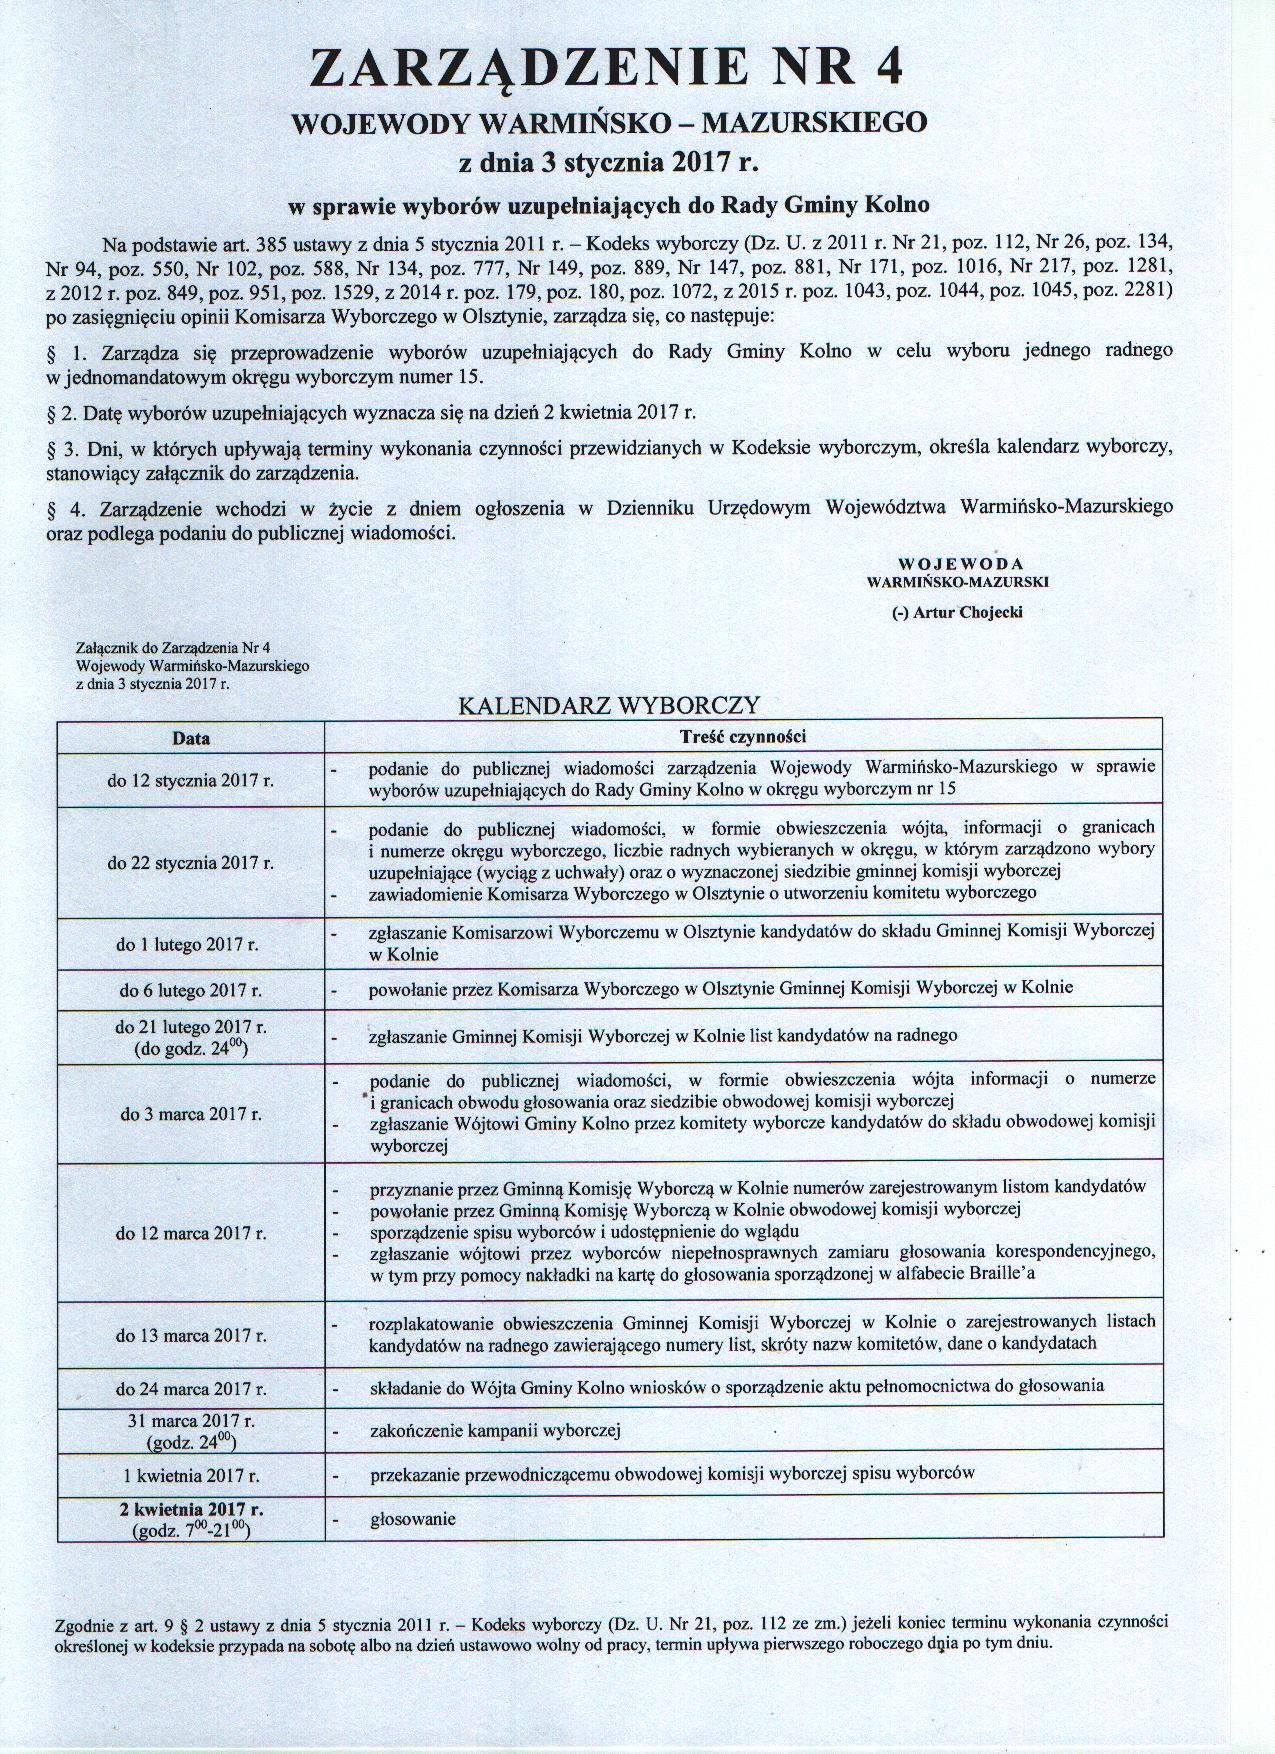 Zarządzenie NR 4 Wojewody Warmińsko Mazurskiego z dnia 3 stycznia 2017 r. w sprawie wyborów uzupełniających do Rady Gminy Kolno